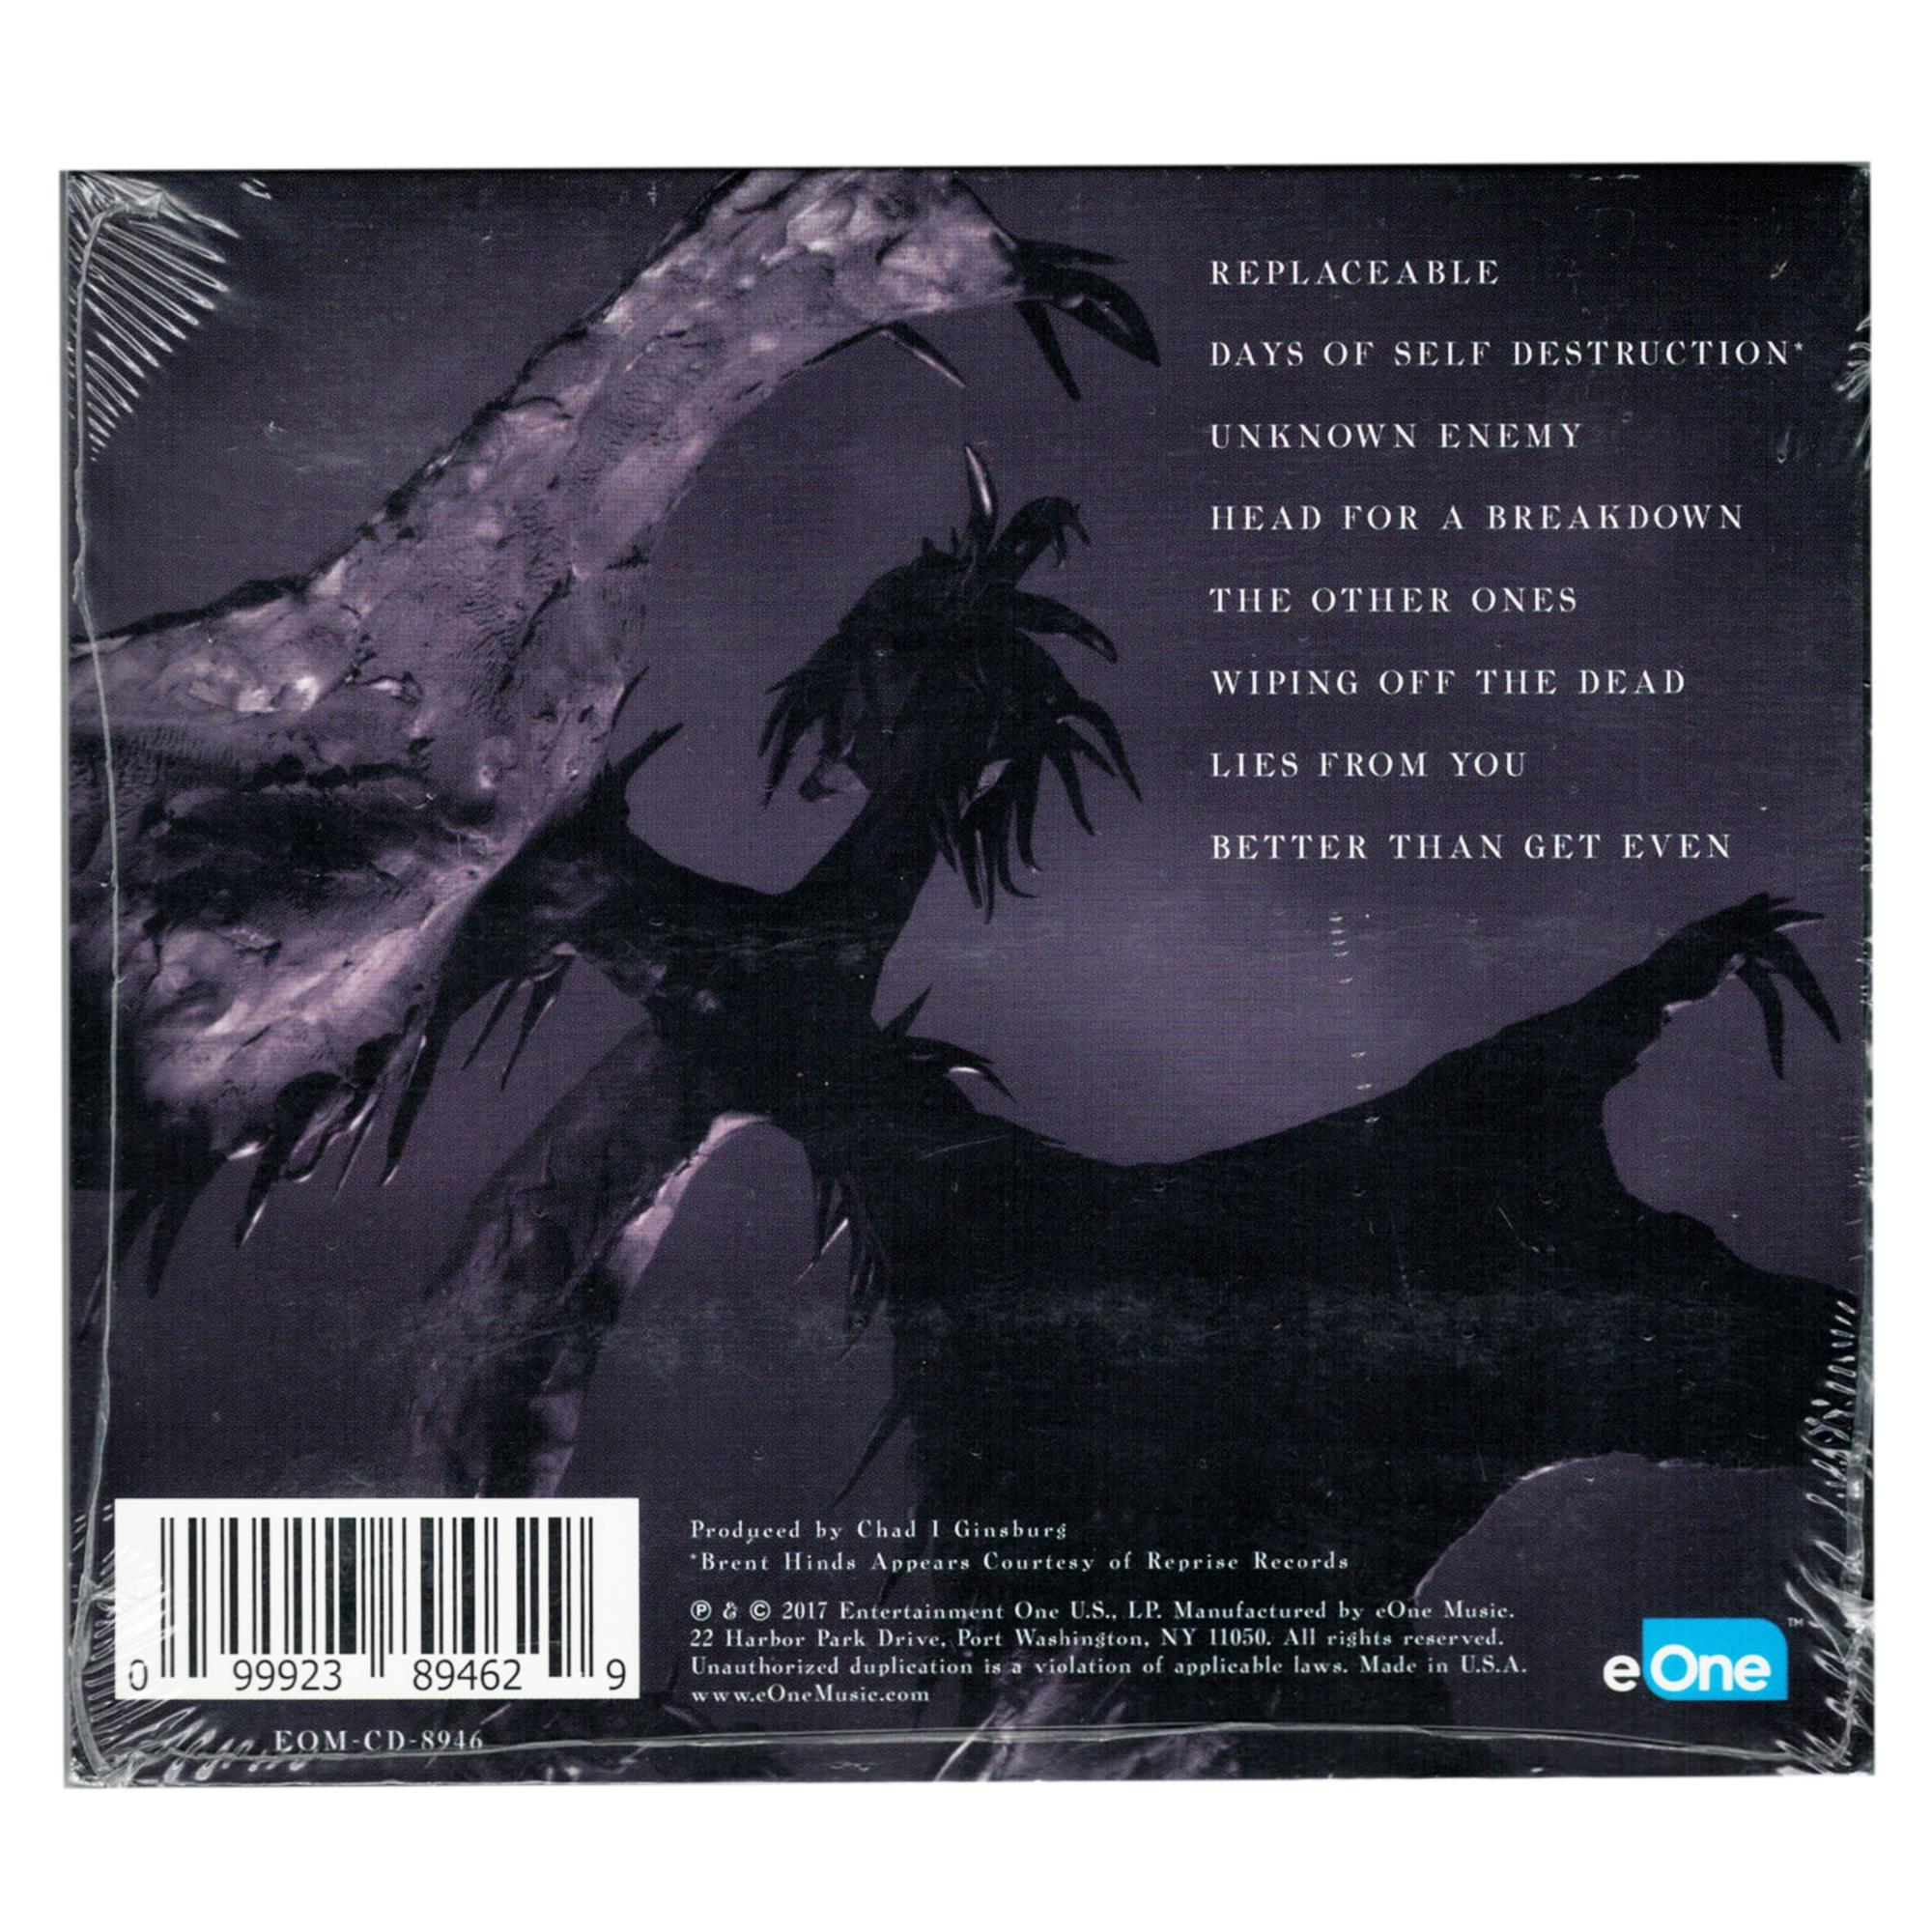 The Phoenix CD